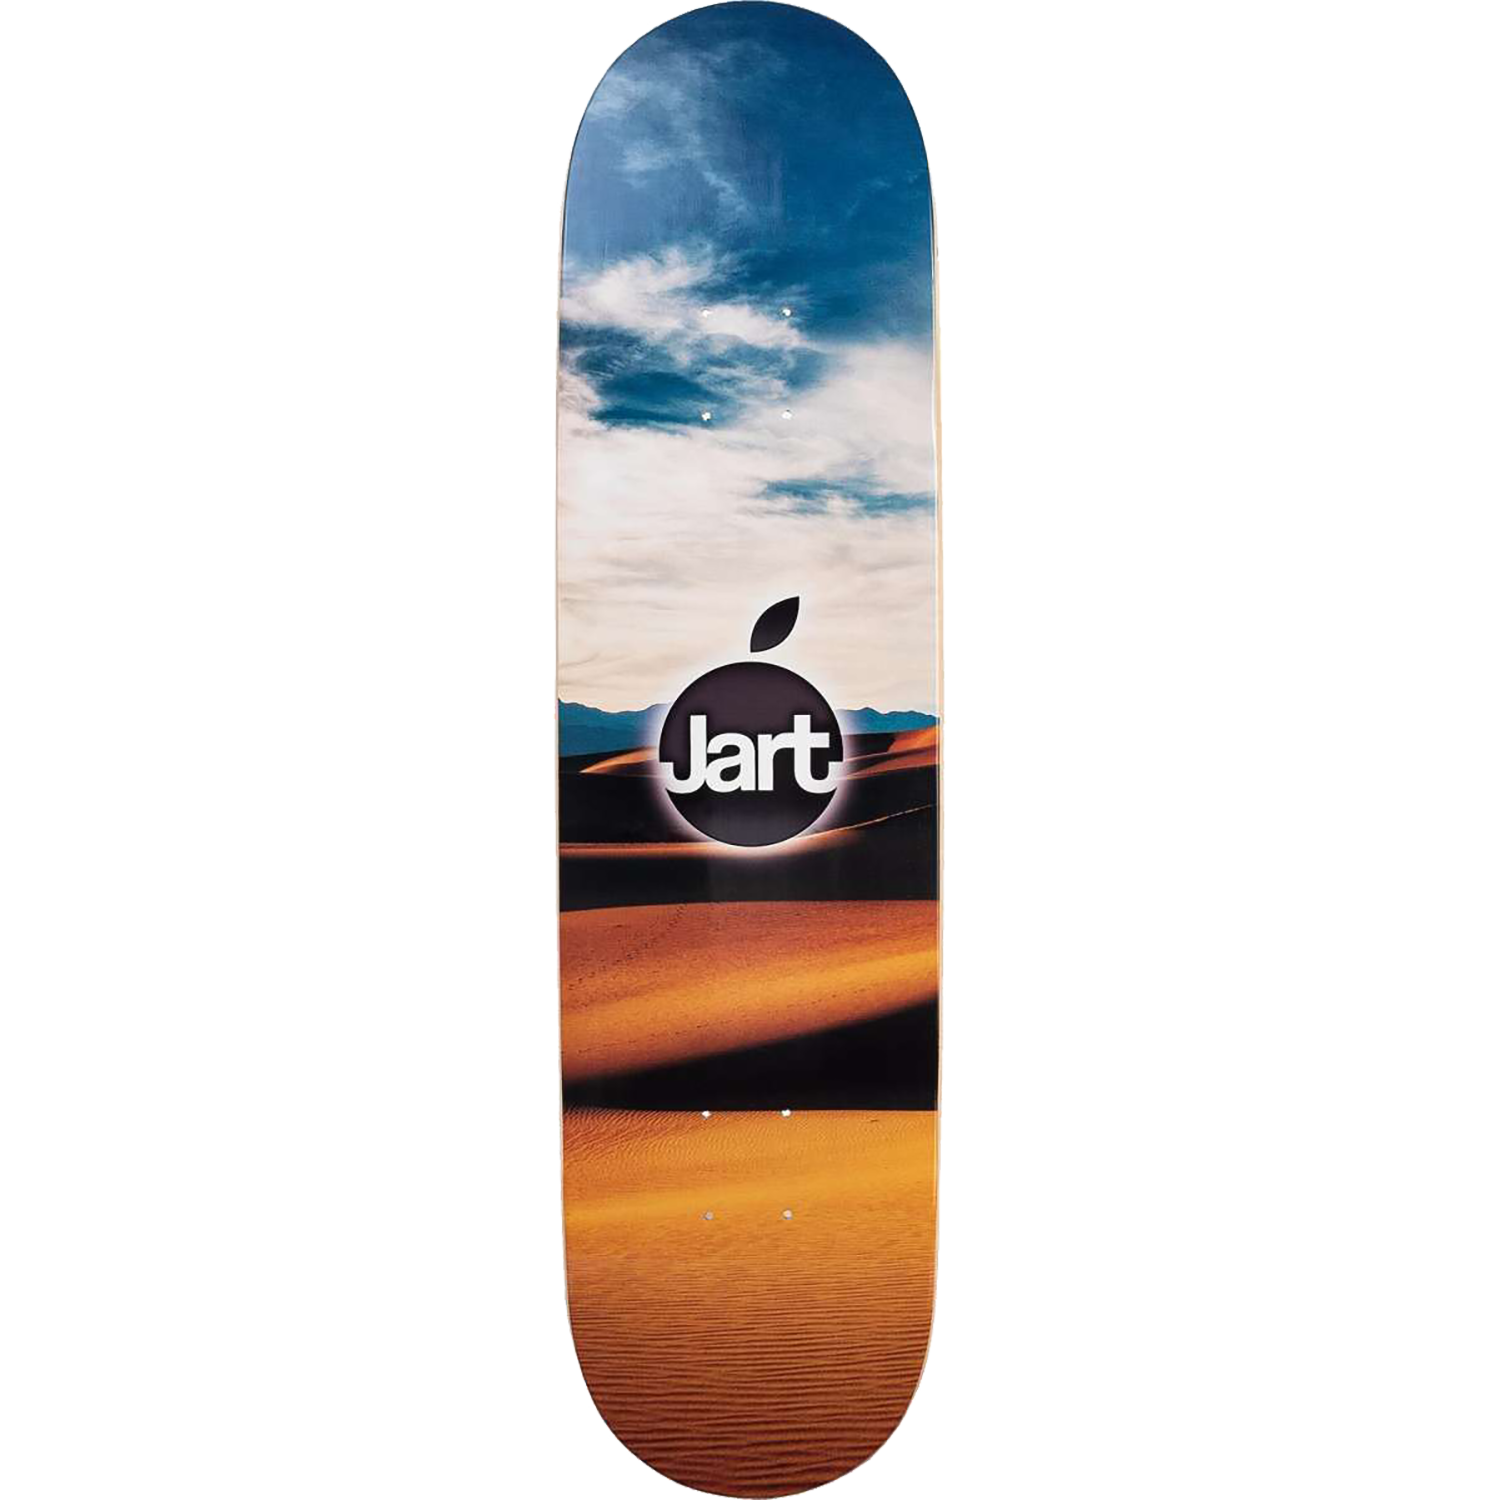 Jart Orange Skateboard Deck -8.0 DECK ONLY